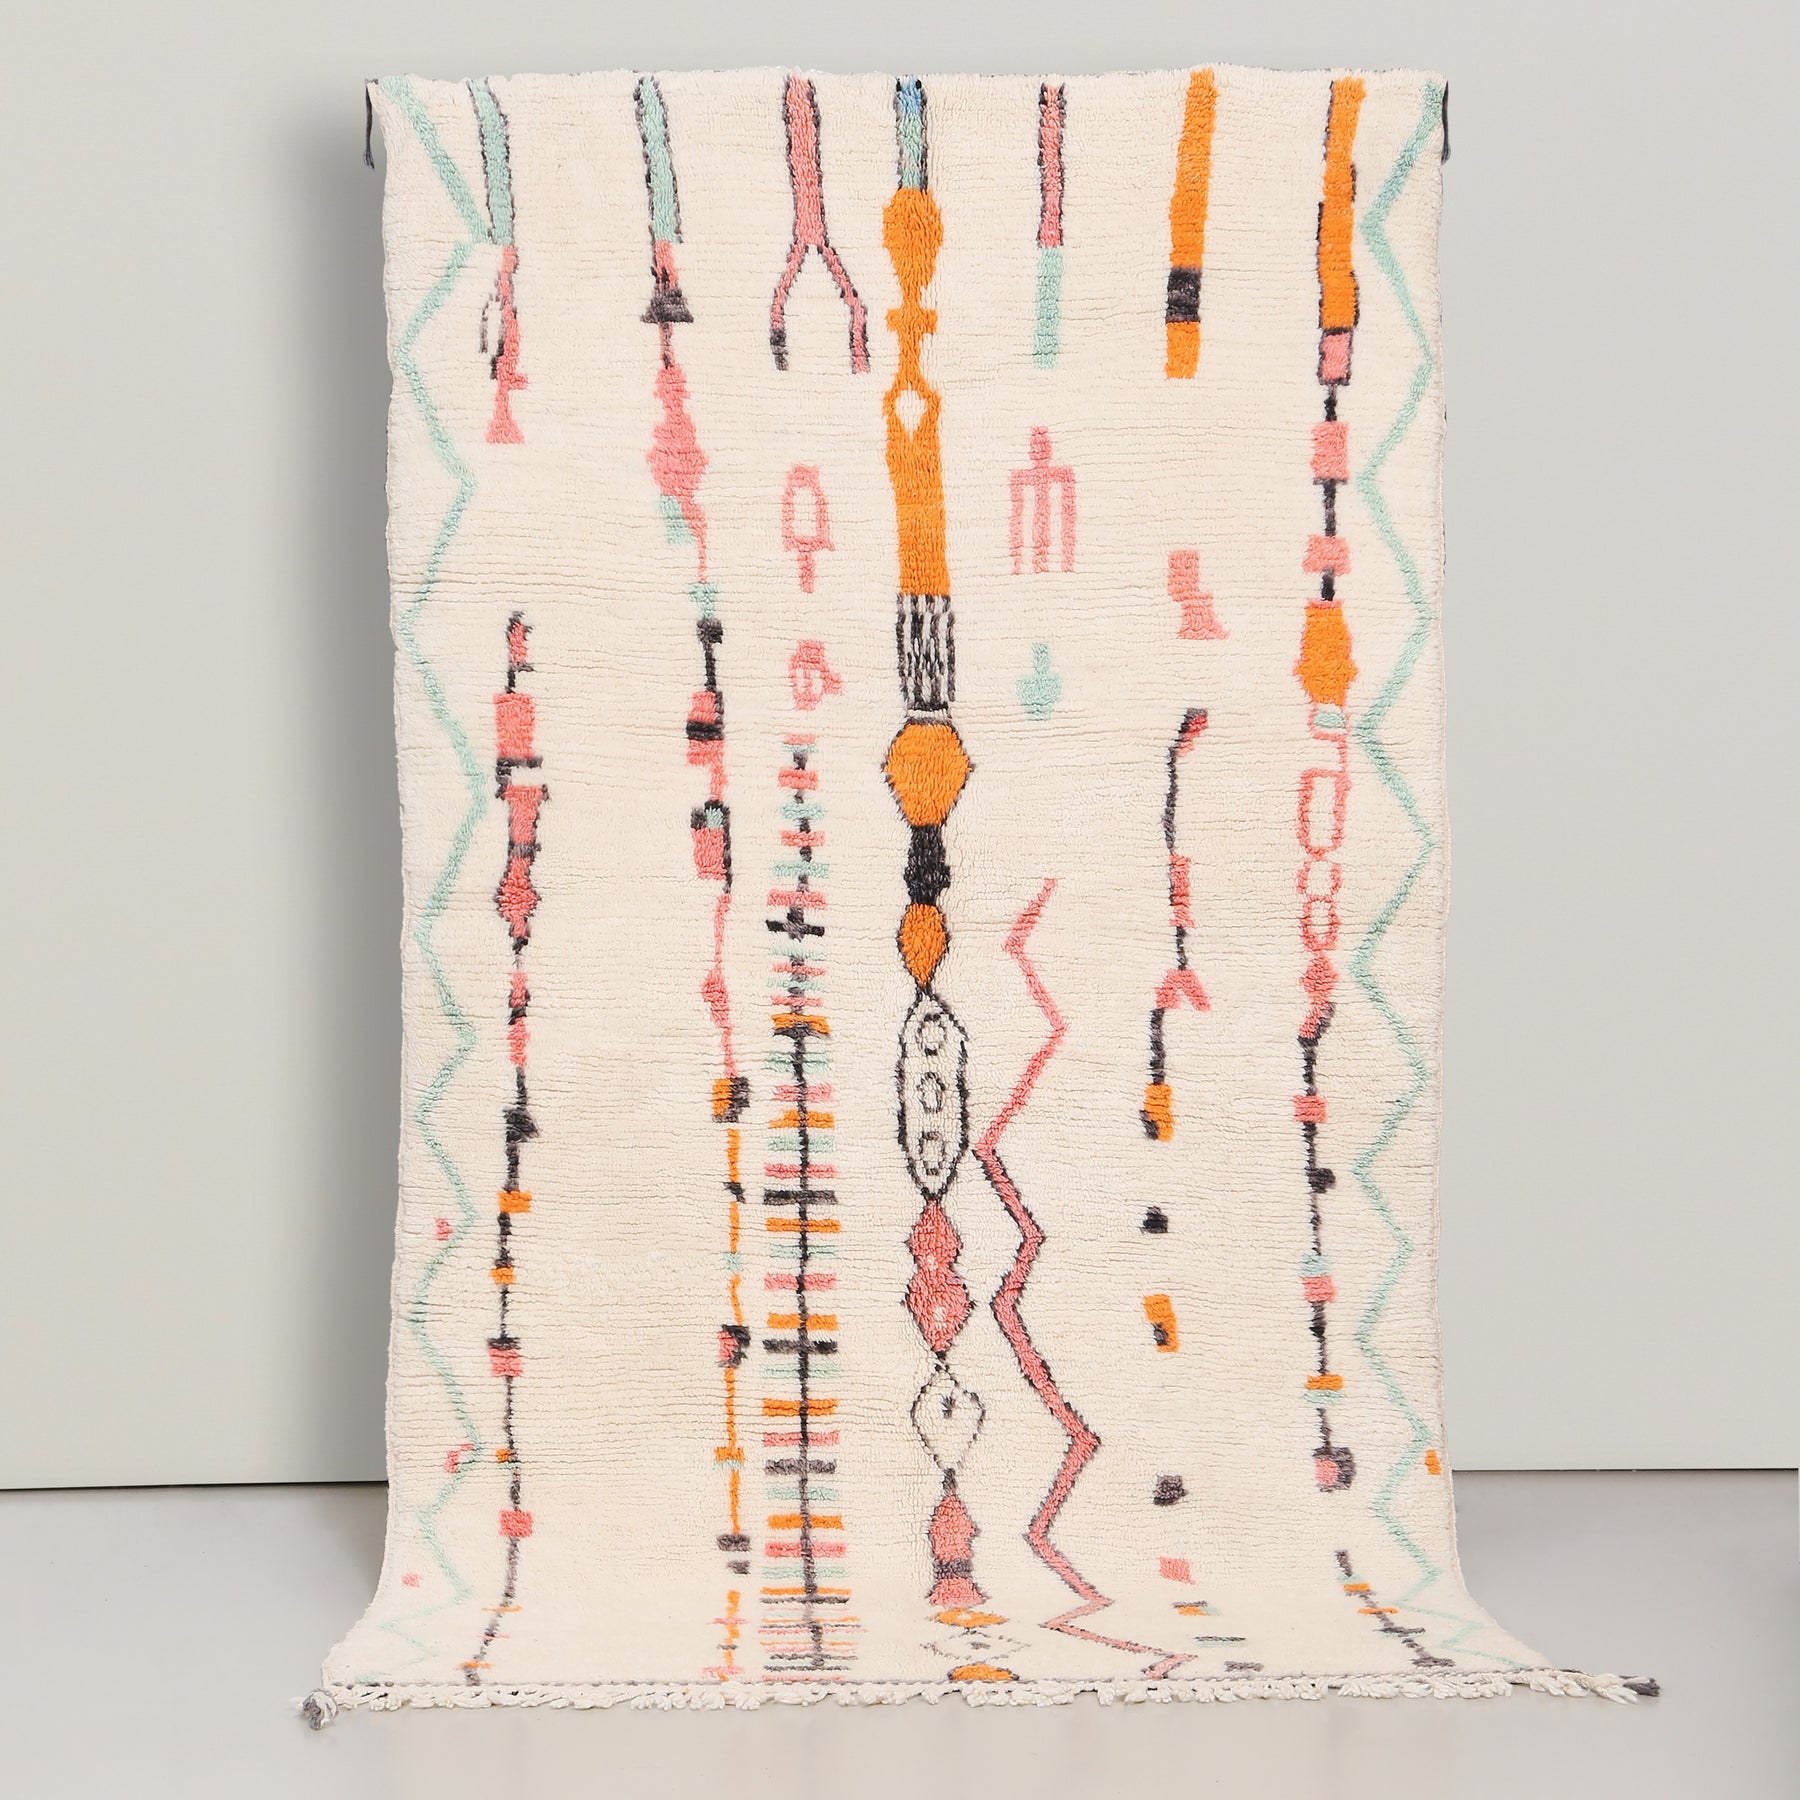 Tappeto azilal in lana naturale annodata con disegni astratti con i colori pastello azzurro,arancione,rosa